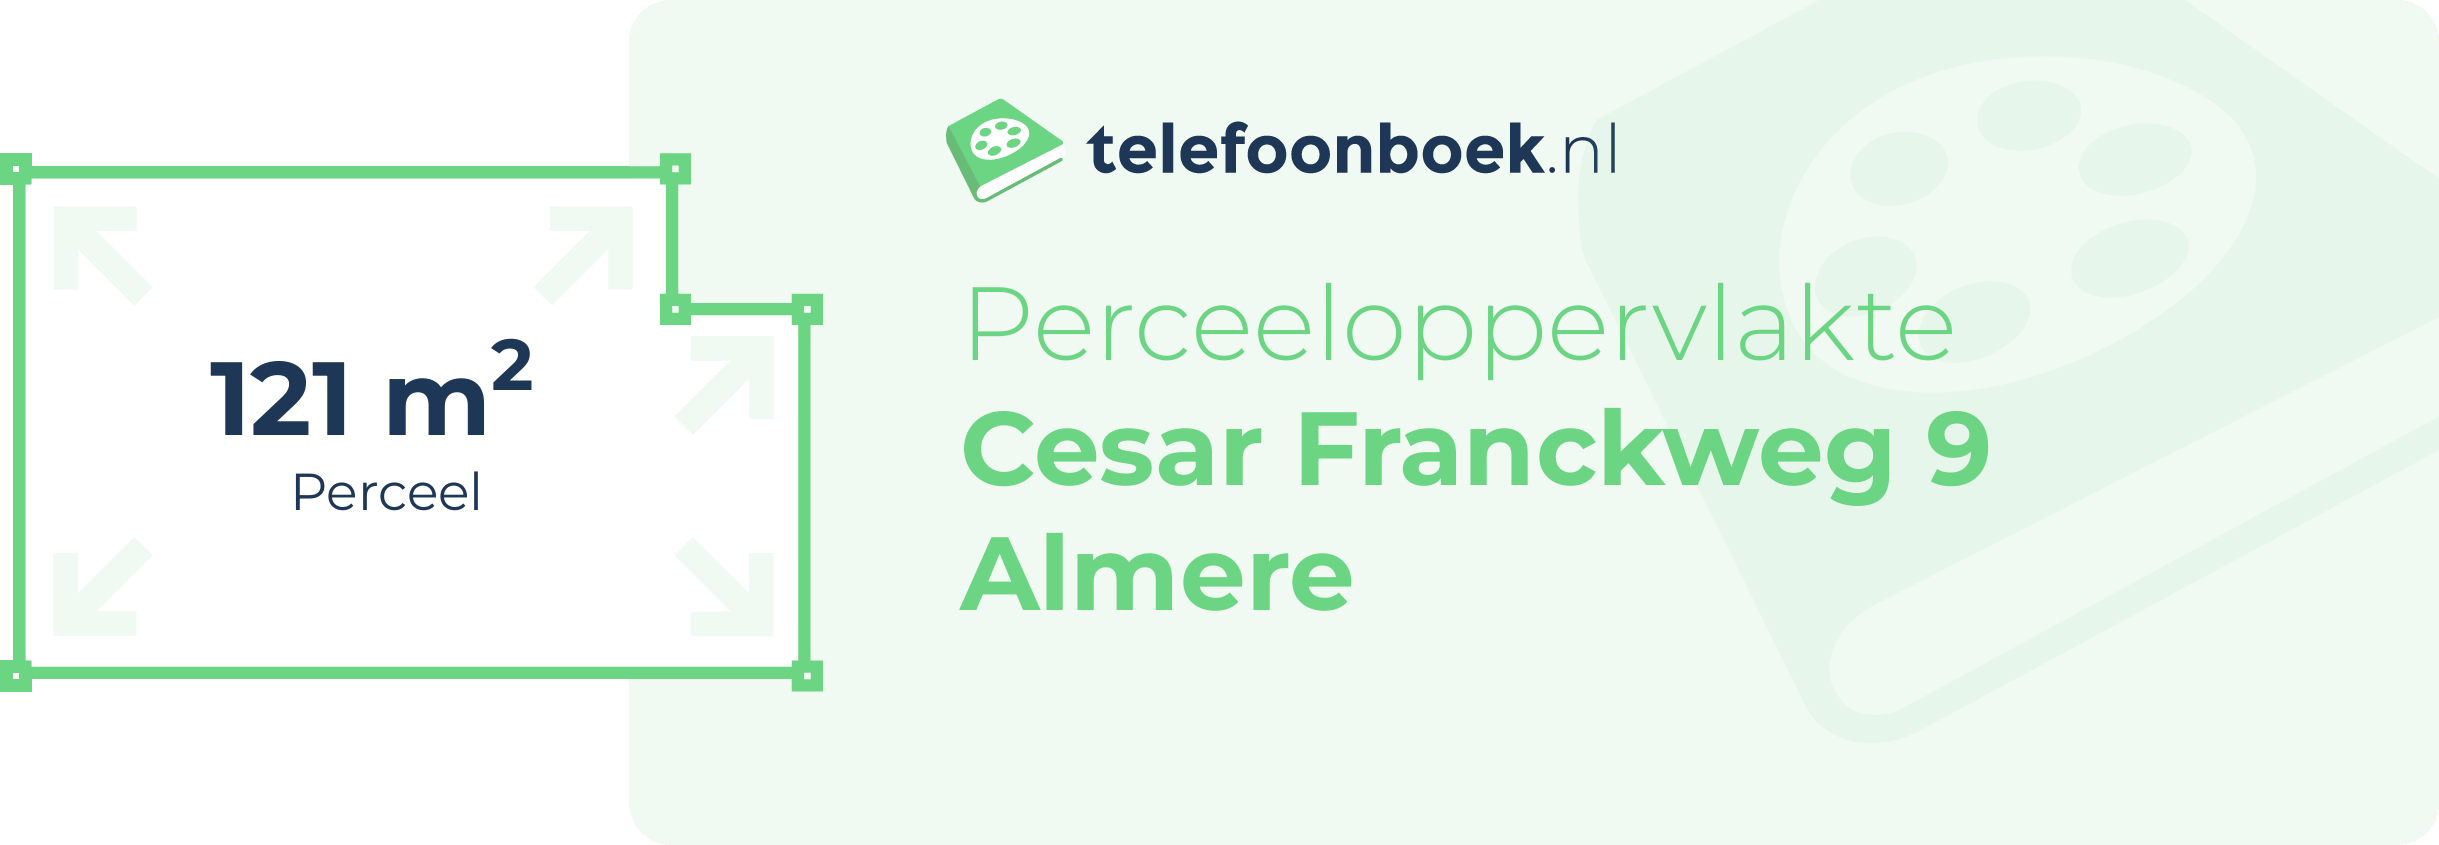 Perceeloppervlakte Cesar Franckweg 9 Almere